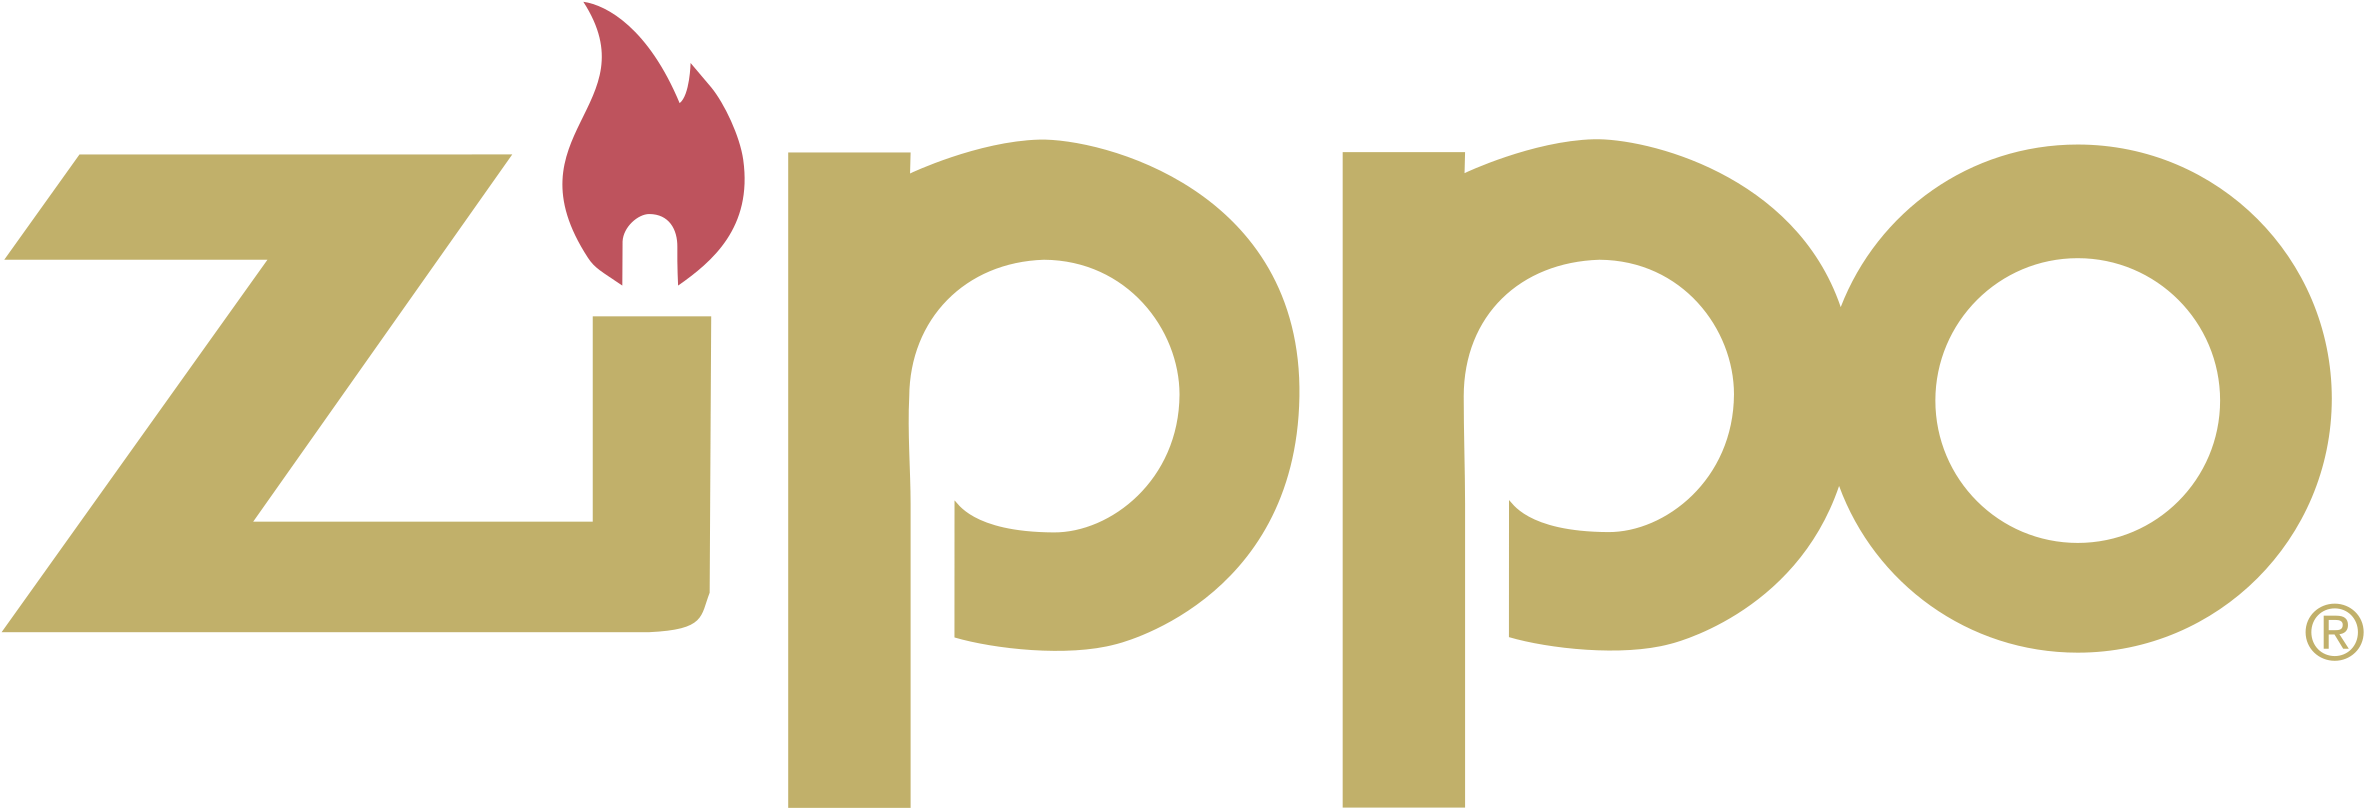 Zippo Logo Png Transparent Graphic Design